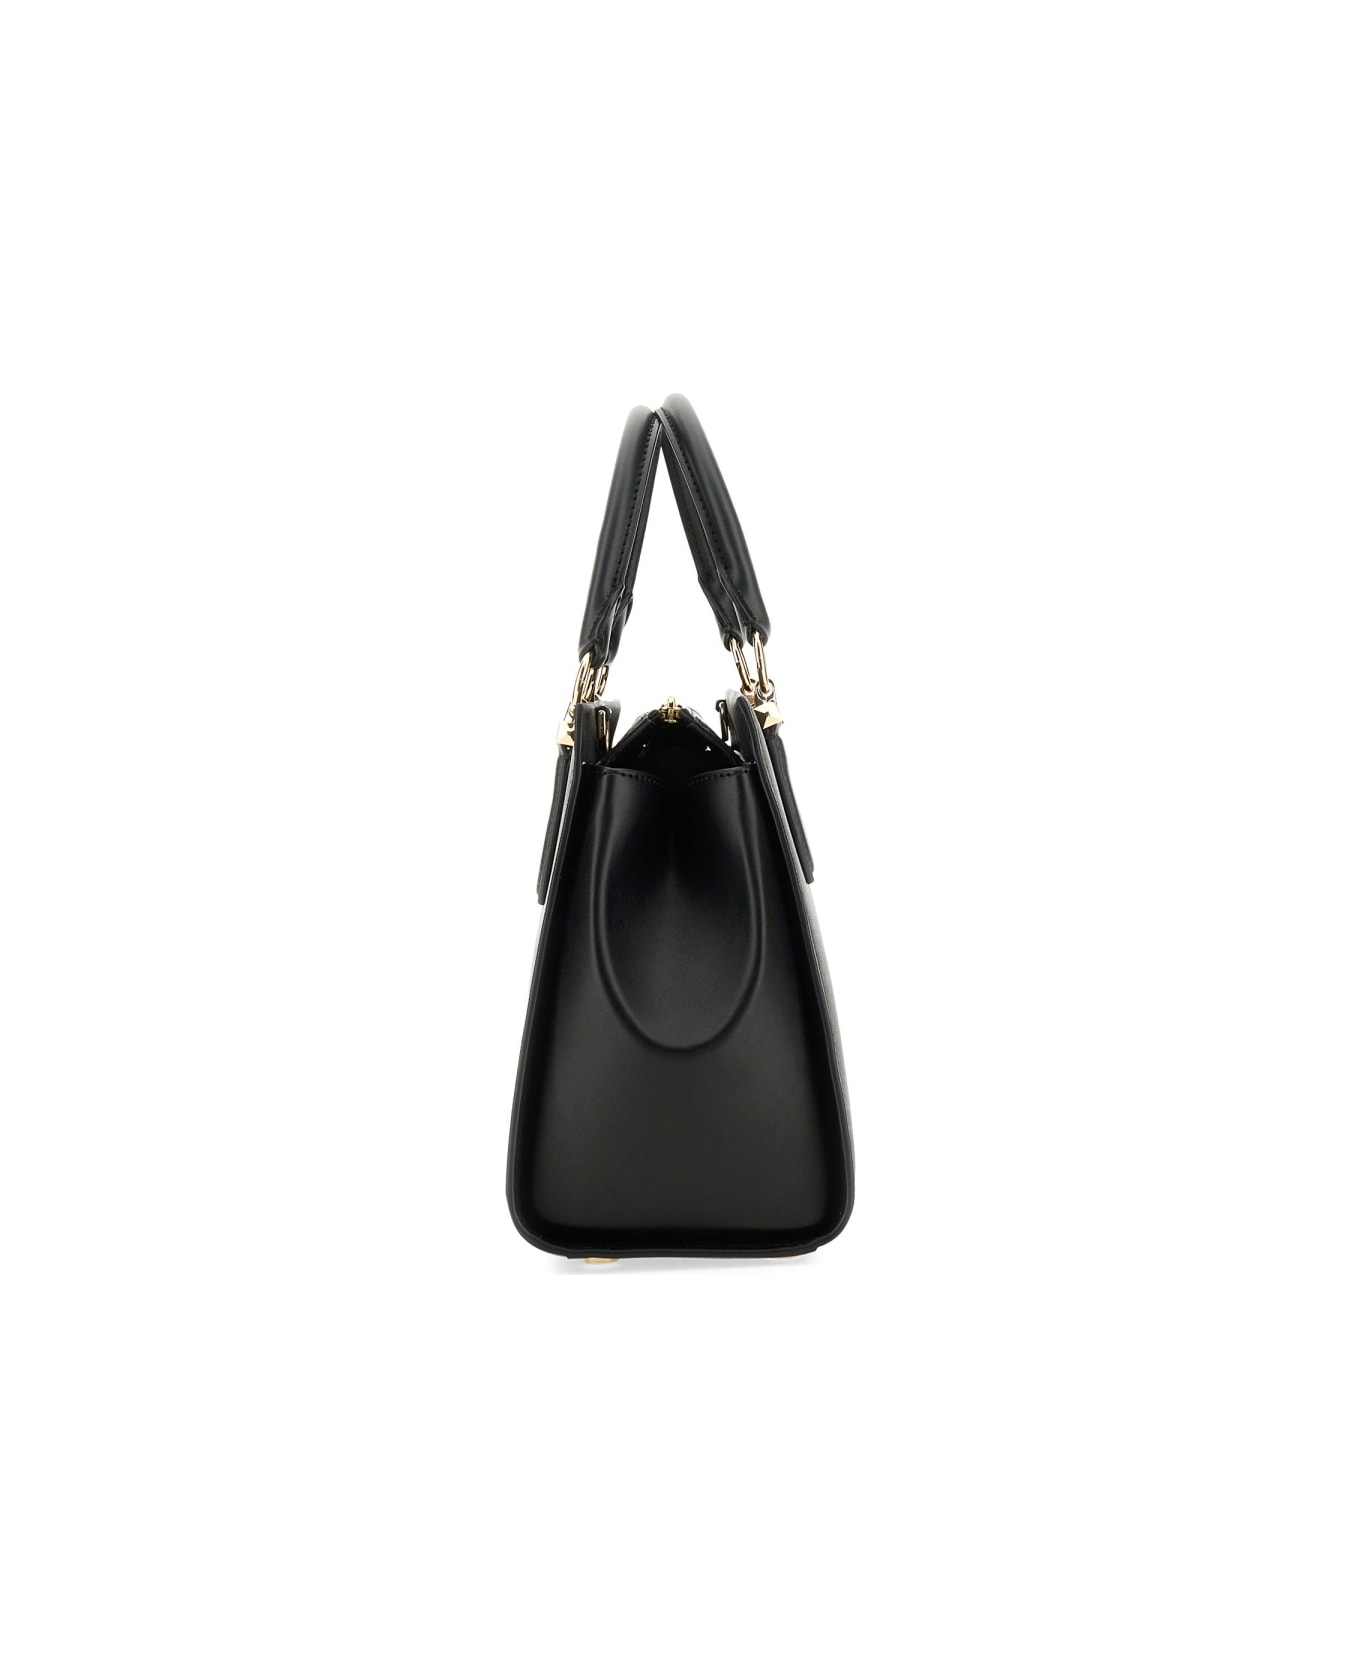 Michael Kors Handbag " Marilyn" - BLACK